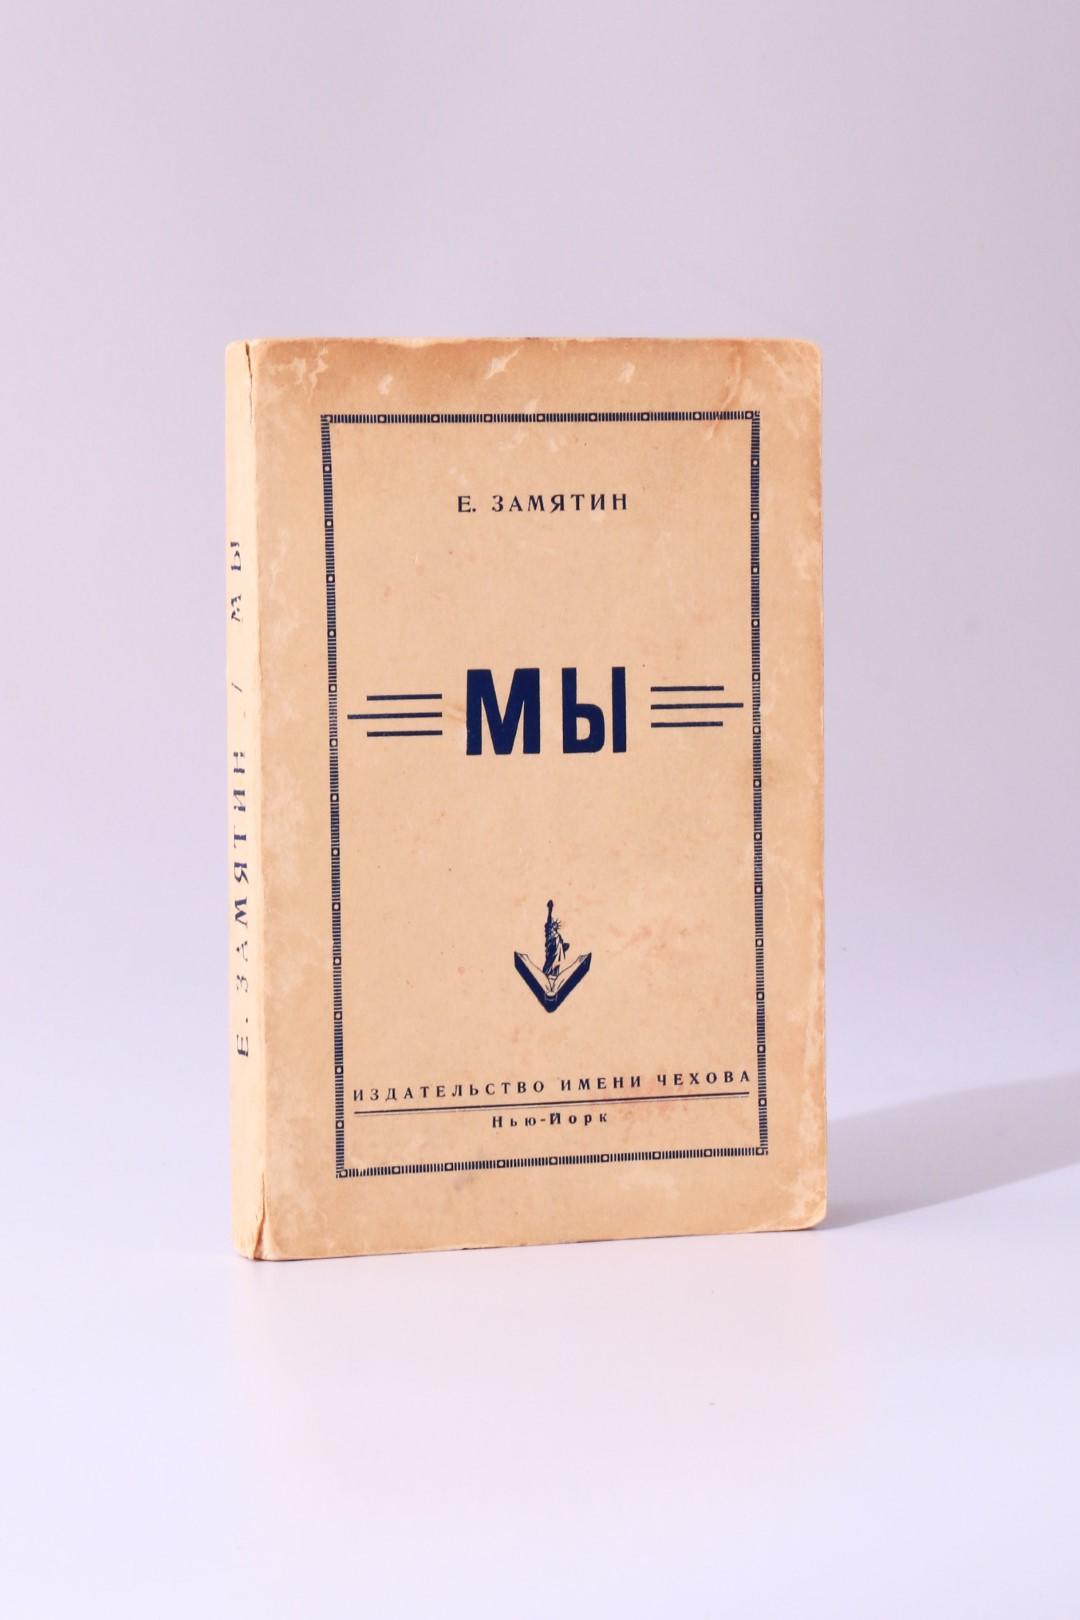 Yevgeny Zamyatin - We - Chekov Publishing House, 1952, First Edition.